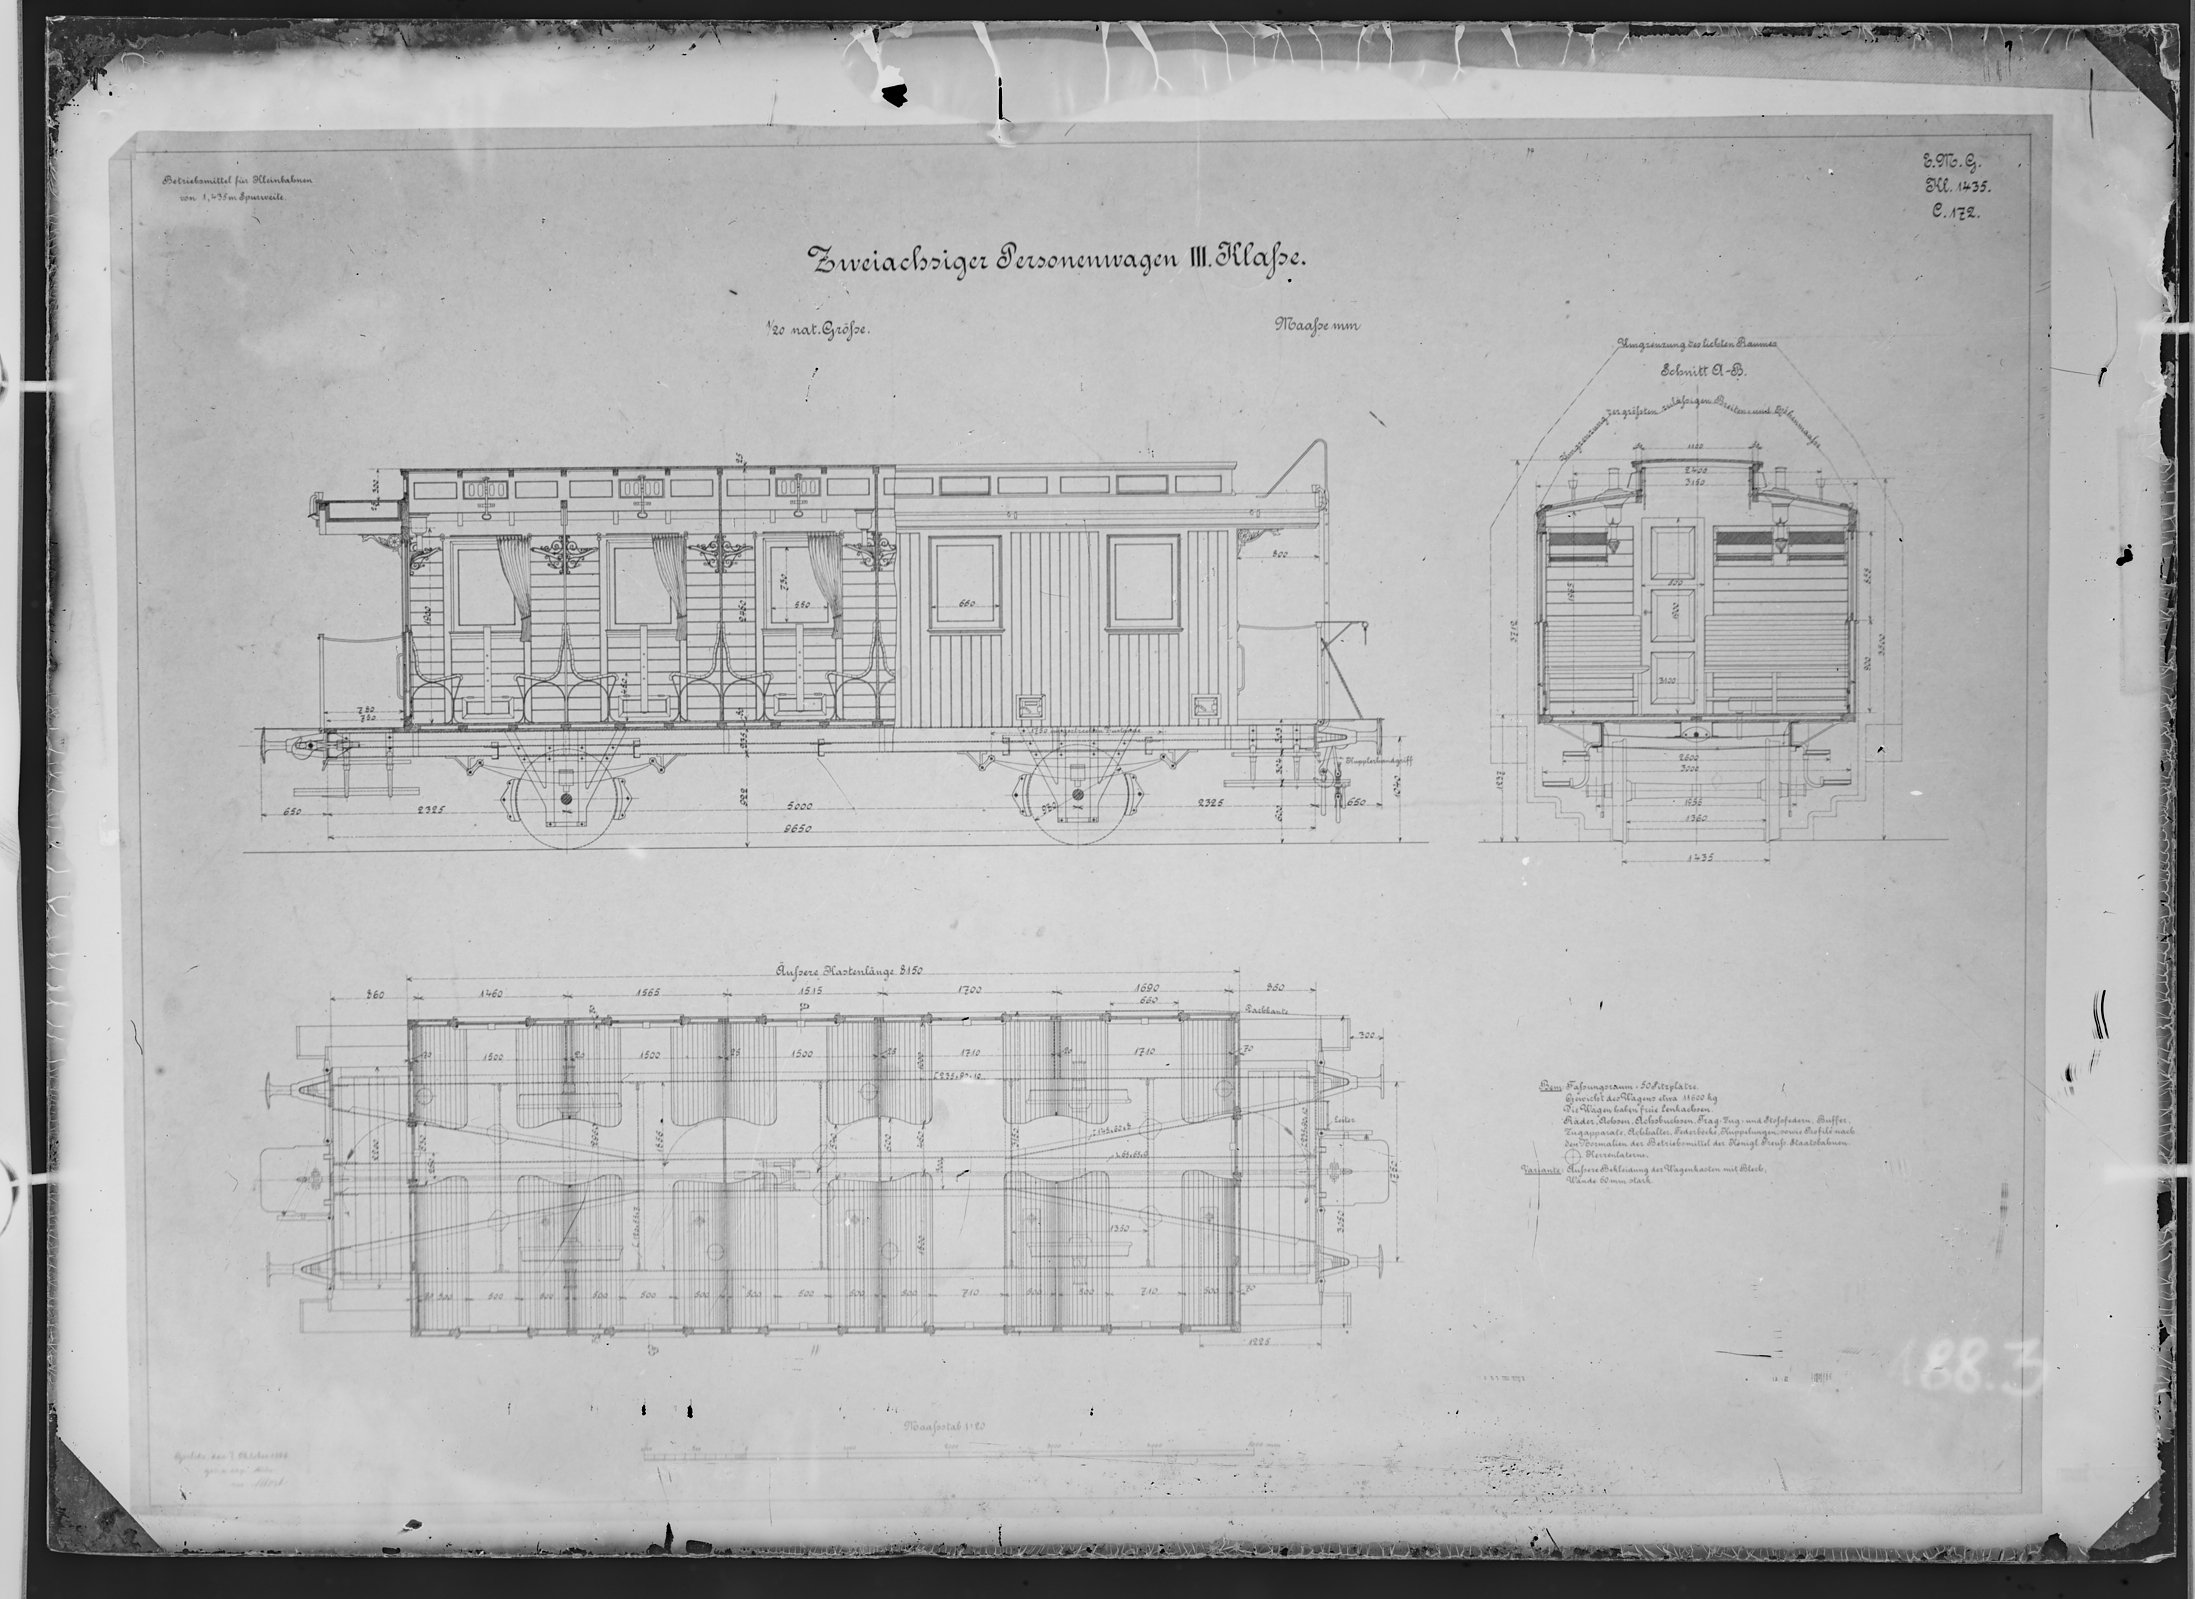 Fotografie: Maßzeichnung eines zweiachsigen Personenwagens dritter Klasse für Kleinbahn, Maßstab 1:20 (Spurweite: 1435 mm), 1895? (Verkehrsmuseum Dresden CC BY-NC-SA)